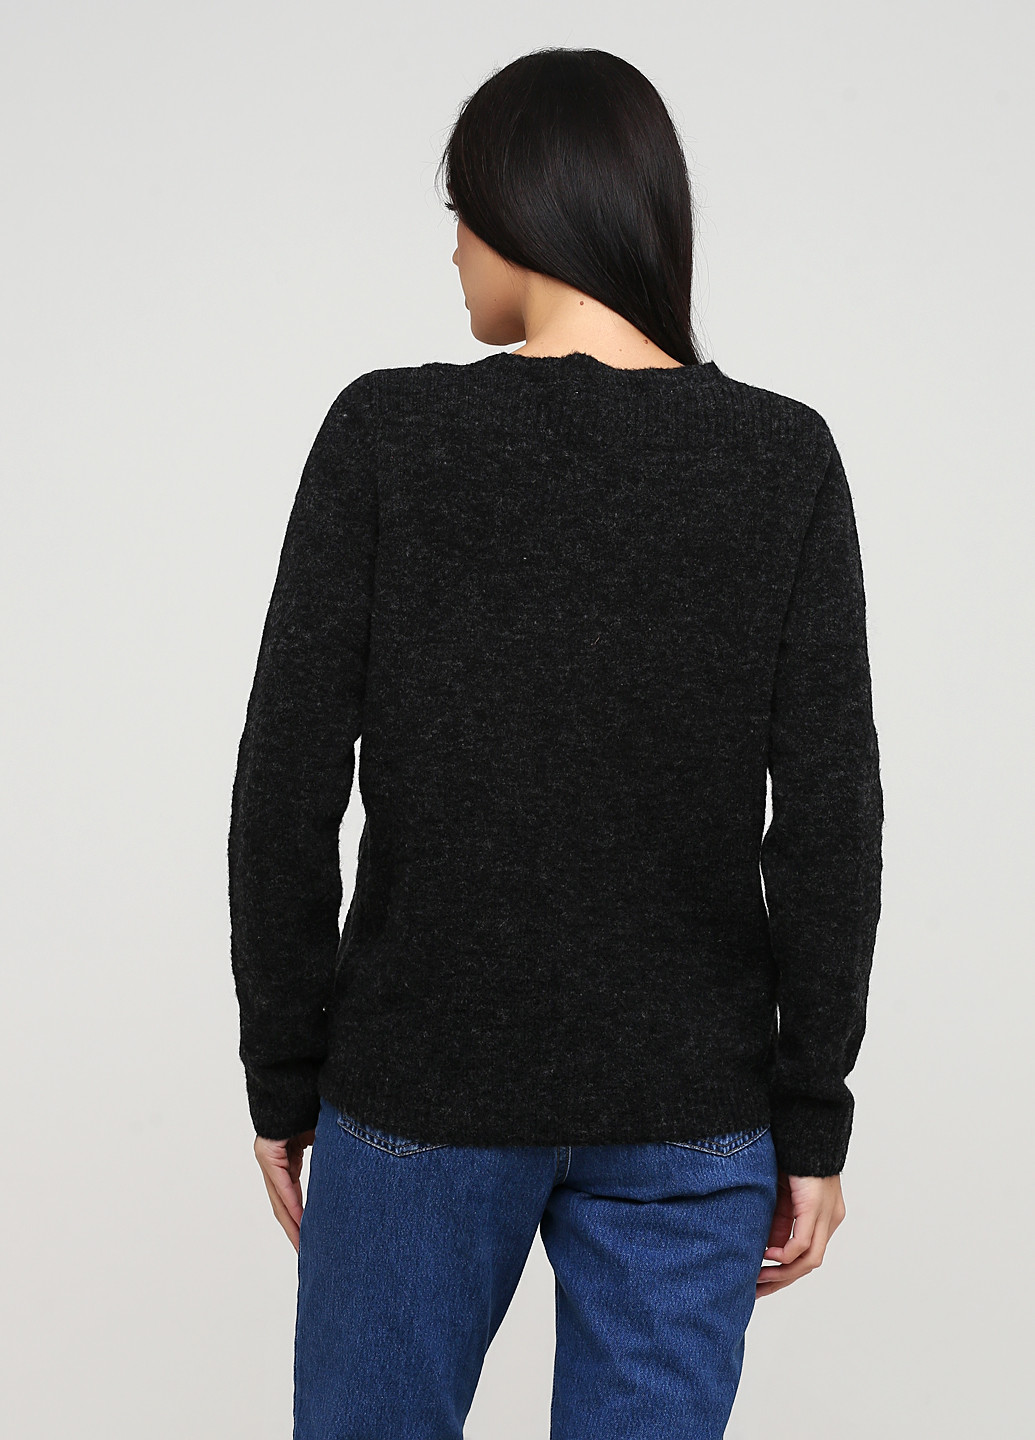 Темно-серый демисезонный пуловер пуловер Lee Cooper